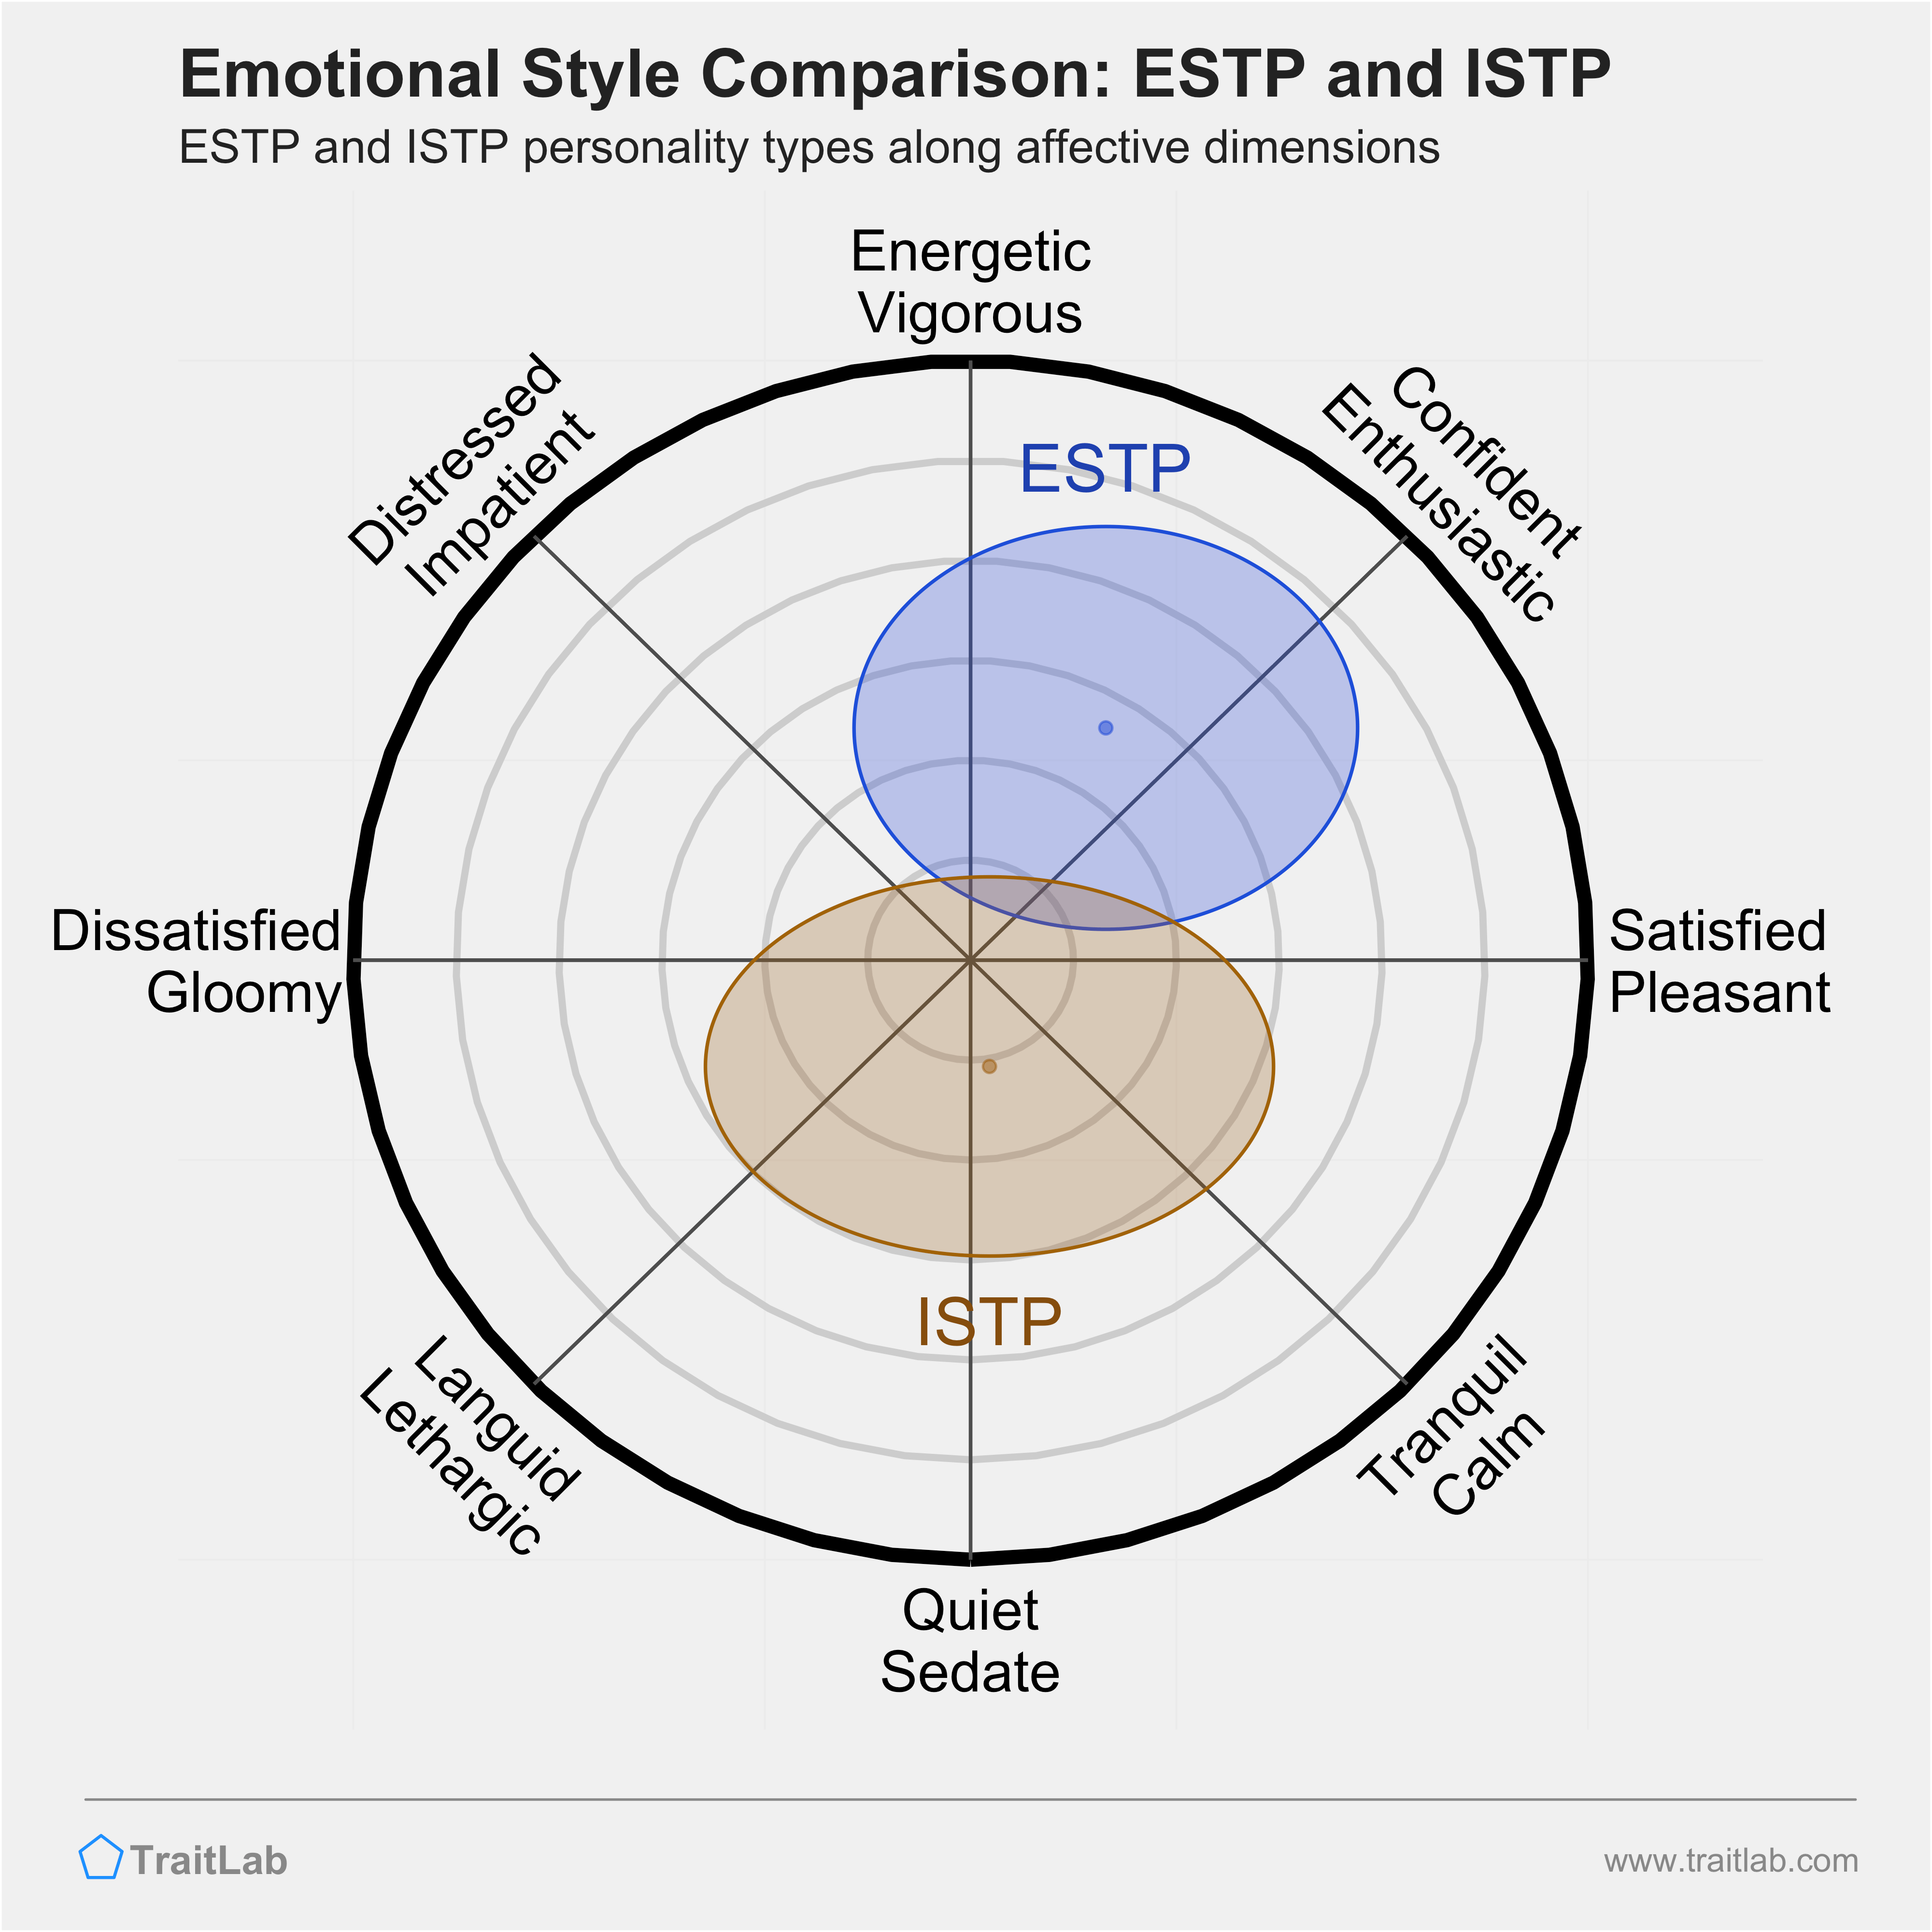 ESTP and ISTP comparison across emotional (affective) dimensions